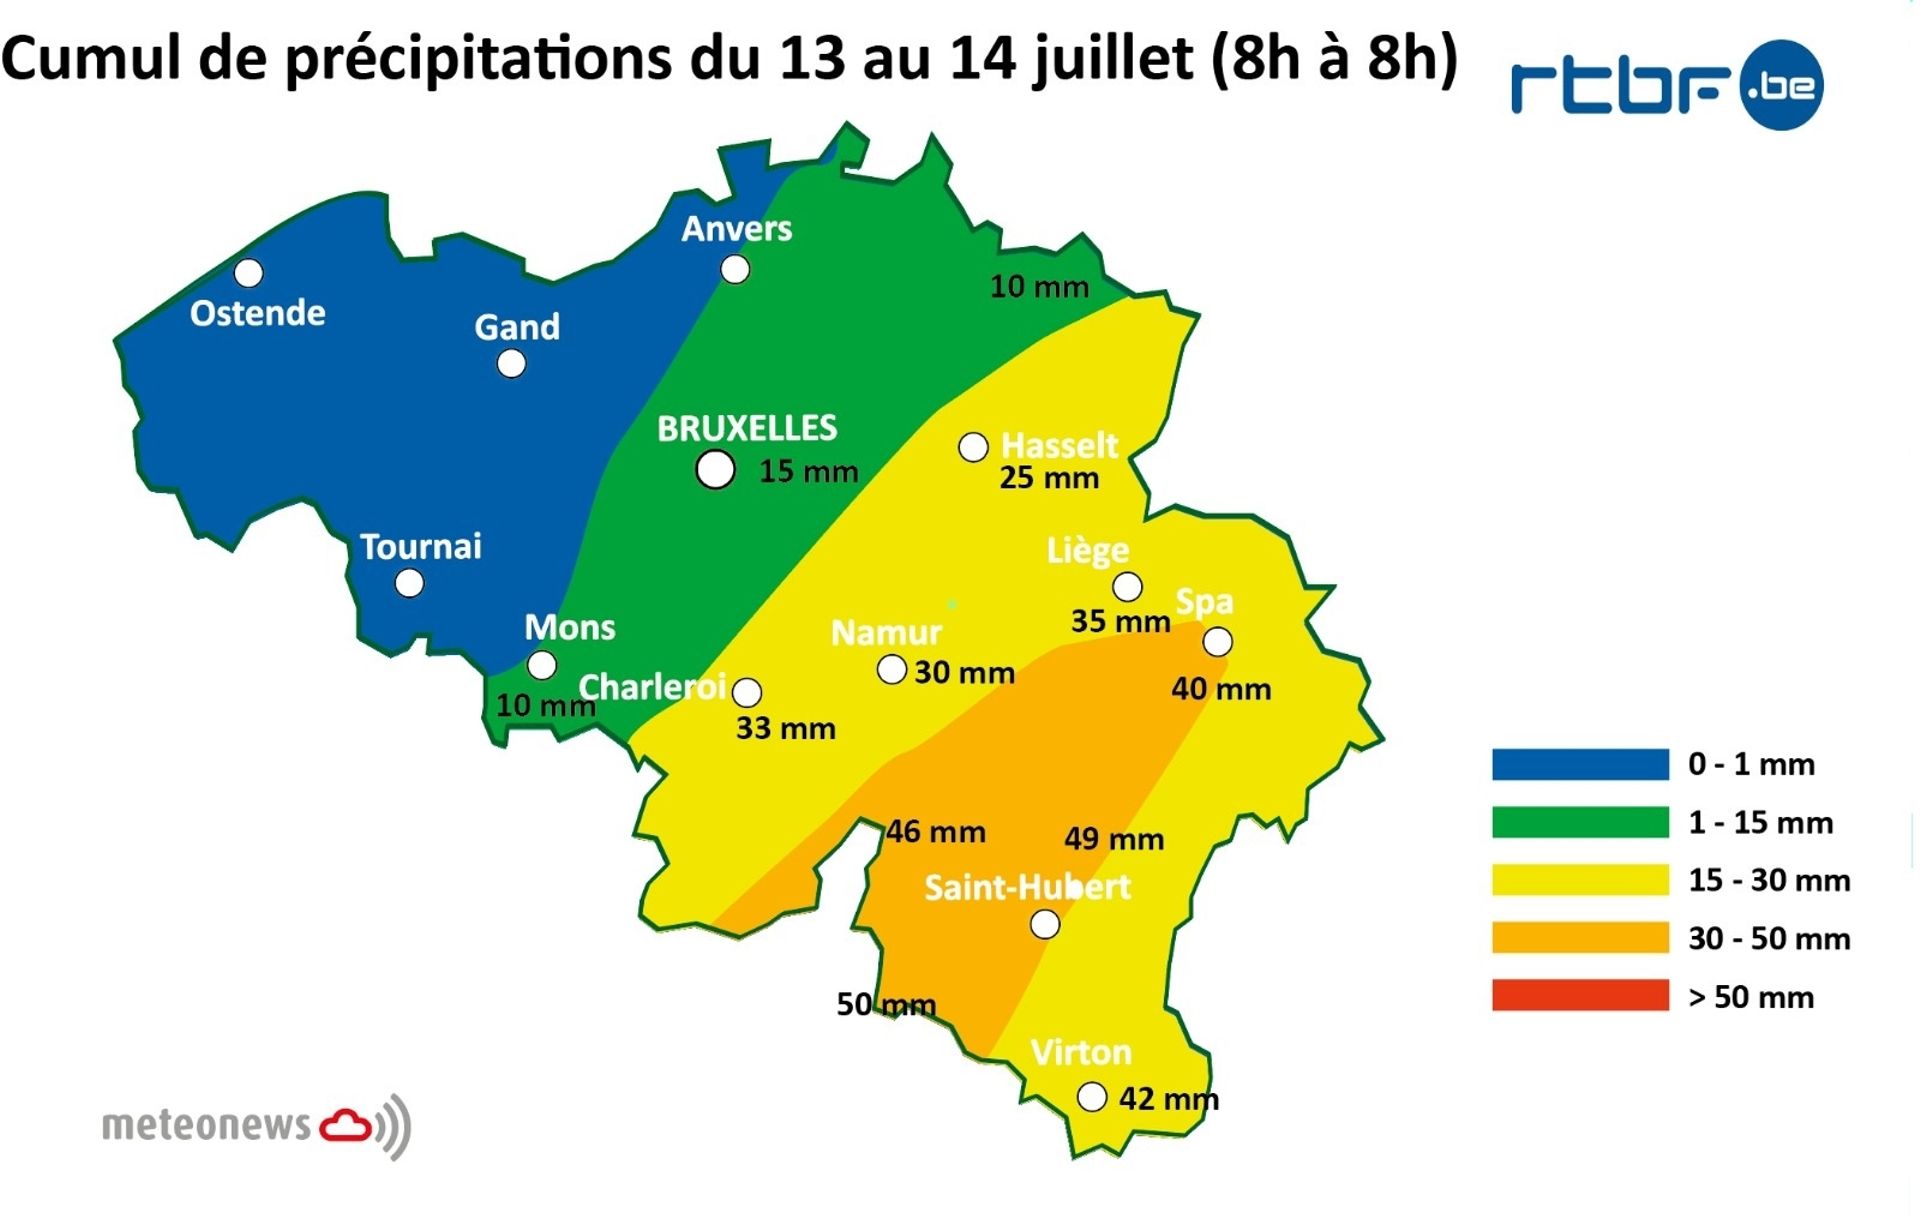 Cumuls de pluie enregistrés entre le 13 et le 14 juillet (de 8h à 8h)